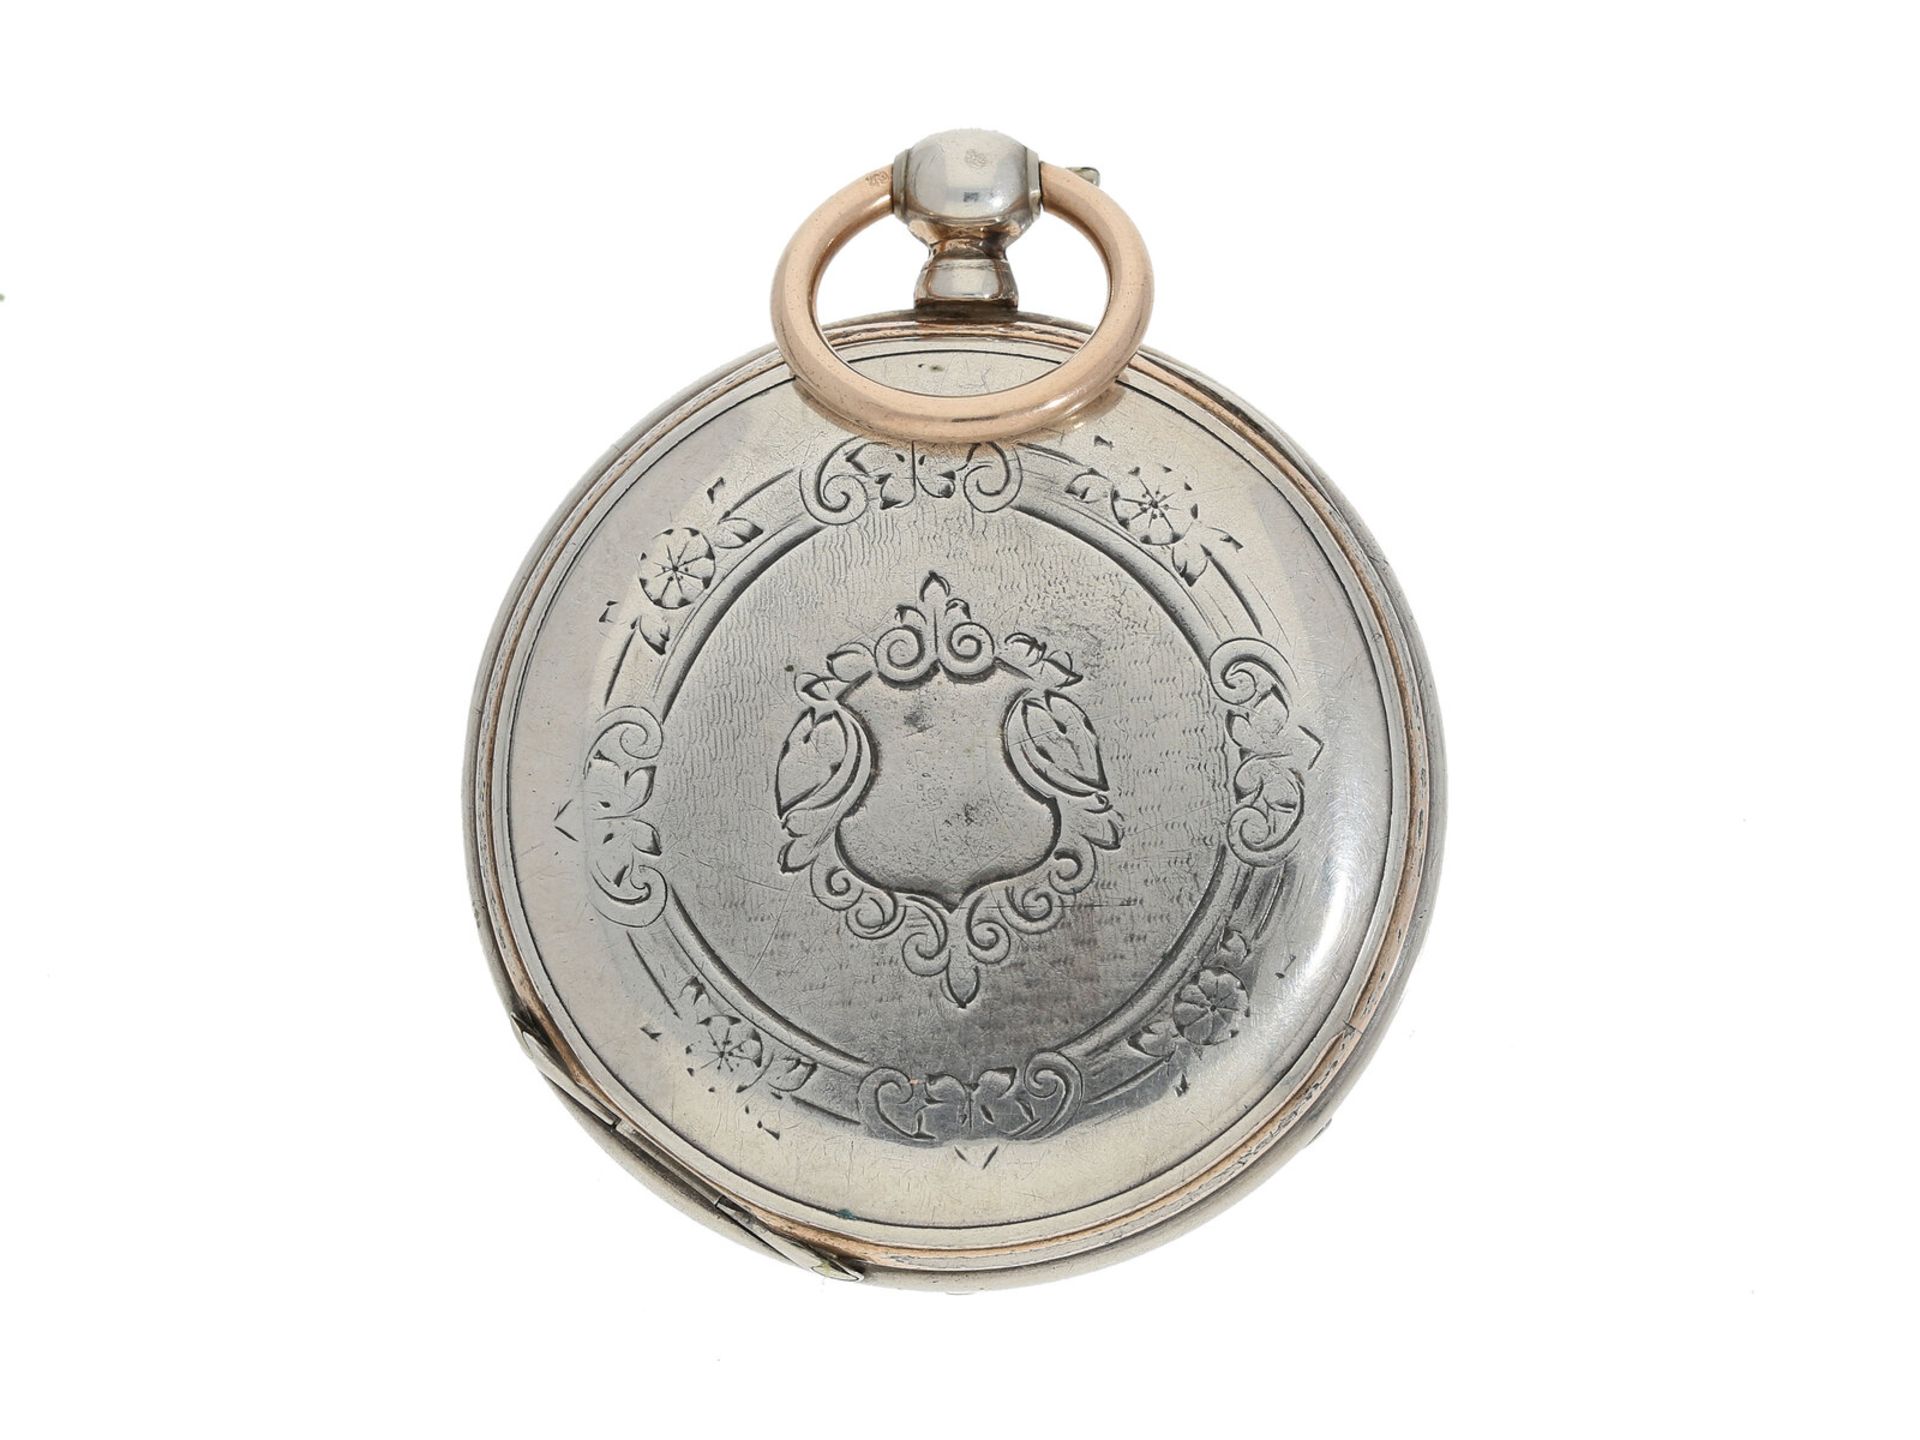 Taschenuhr: seltenes Wippen-Chronometer, um 1860, signiert Carl Möller Kjöbenhavn (Copenhagen), - Bild 2 aus 3